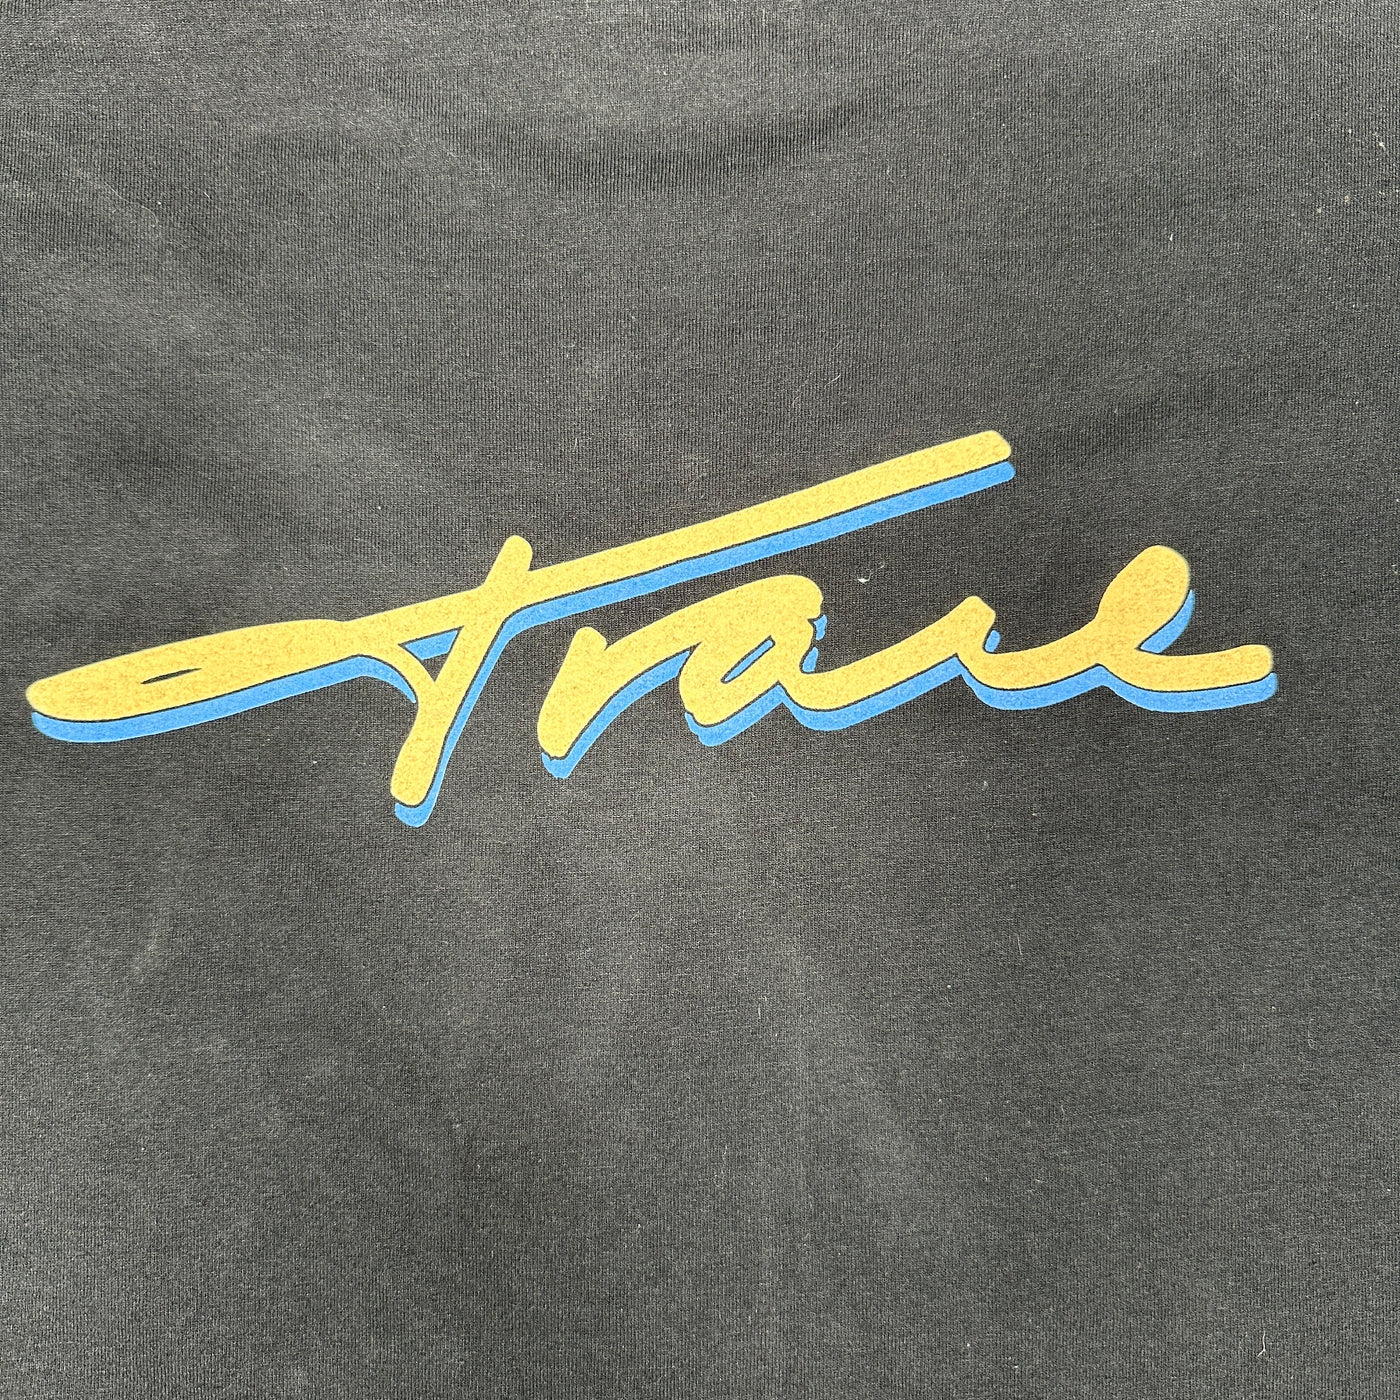 '97 Trace Adkins Country Music Concert Tour T-shirt sz L